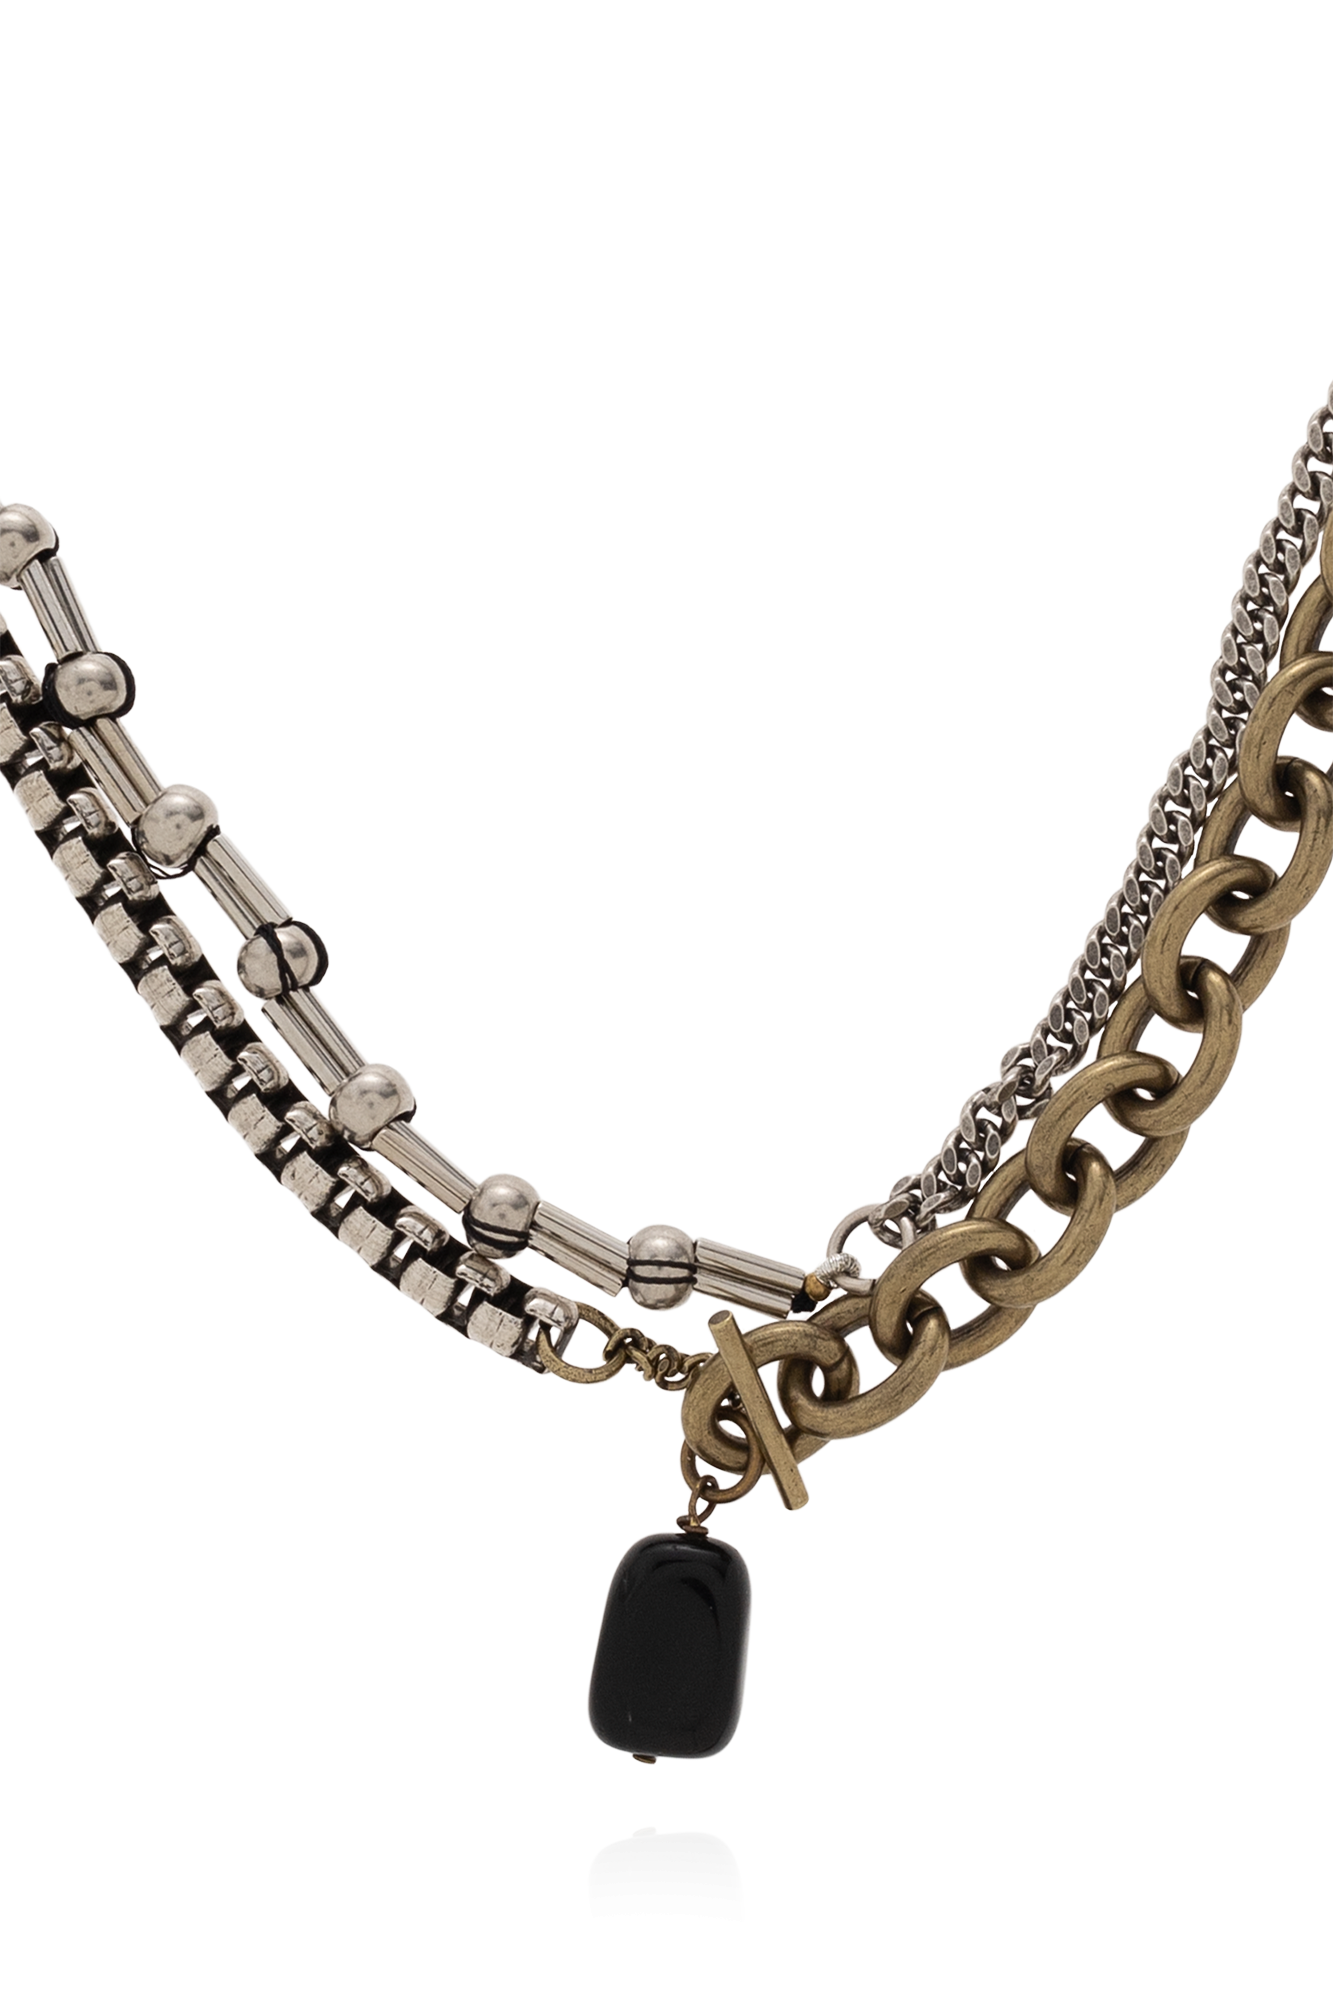 DRIES VAN NOTEN NECKLACE WITH SEMI-PRECIOUS STONE Necklace with semi-precious stone